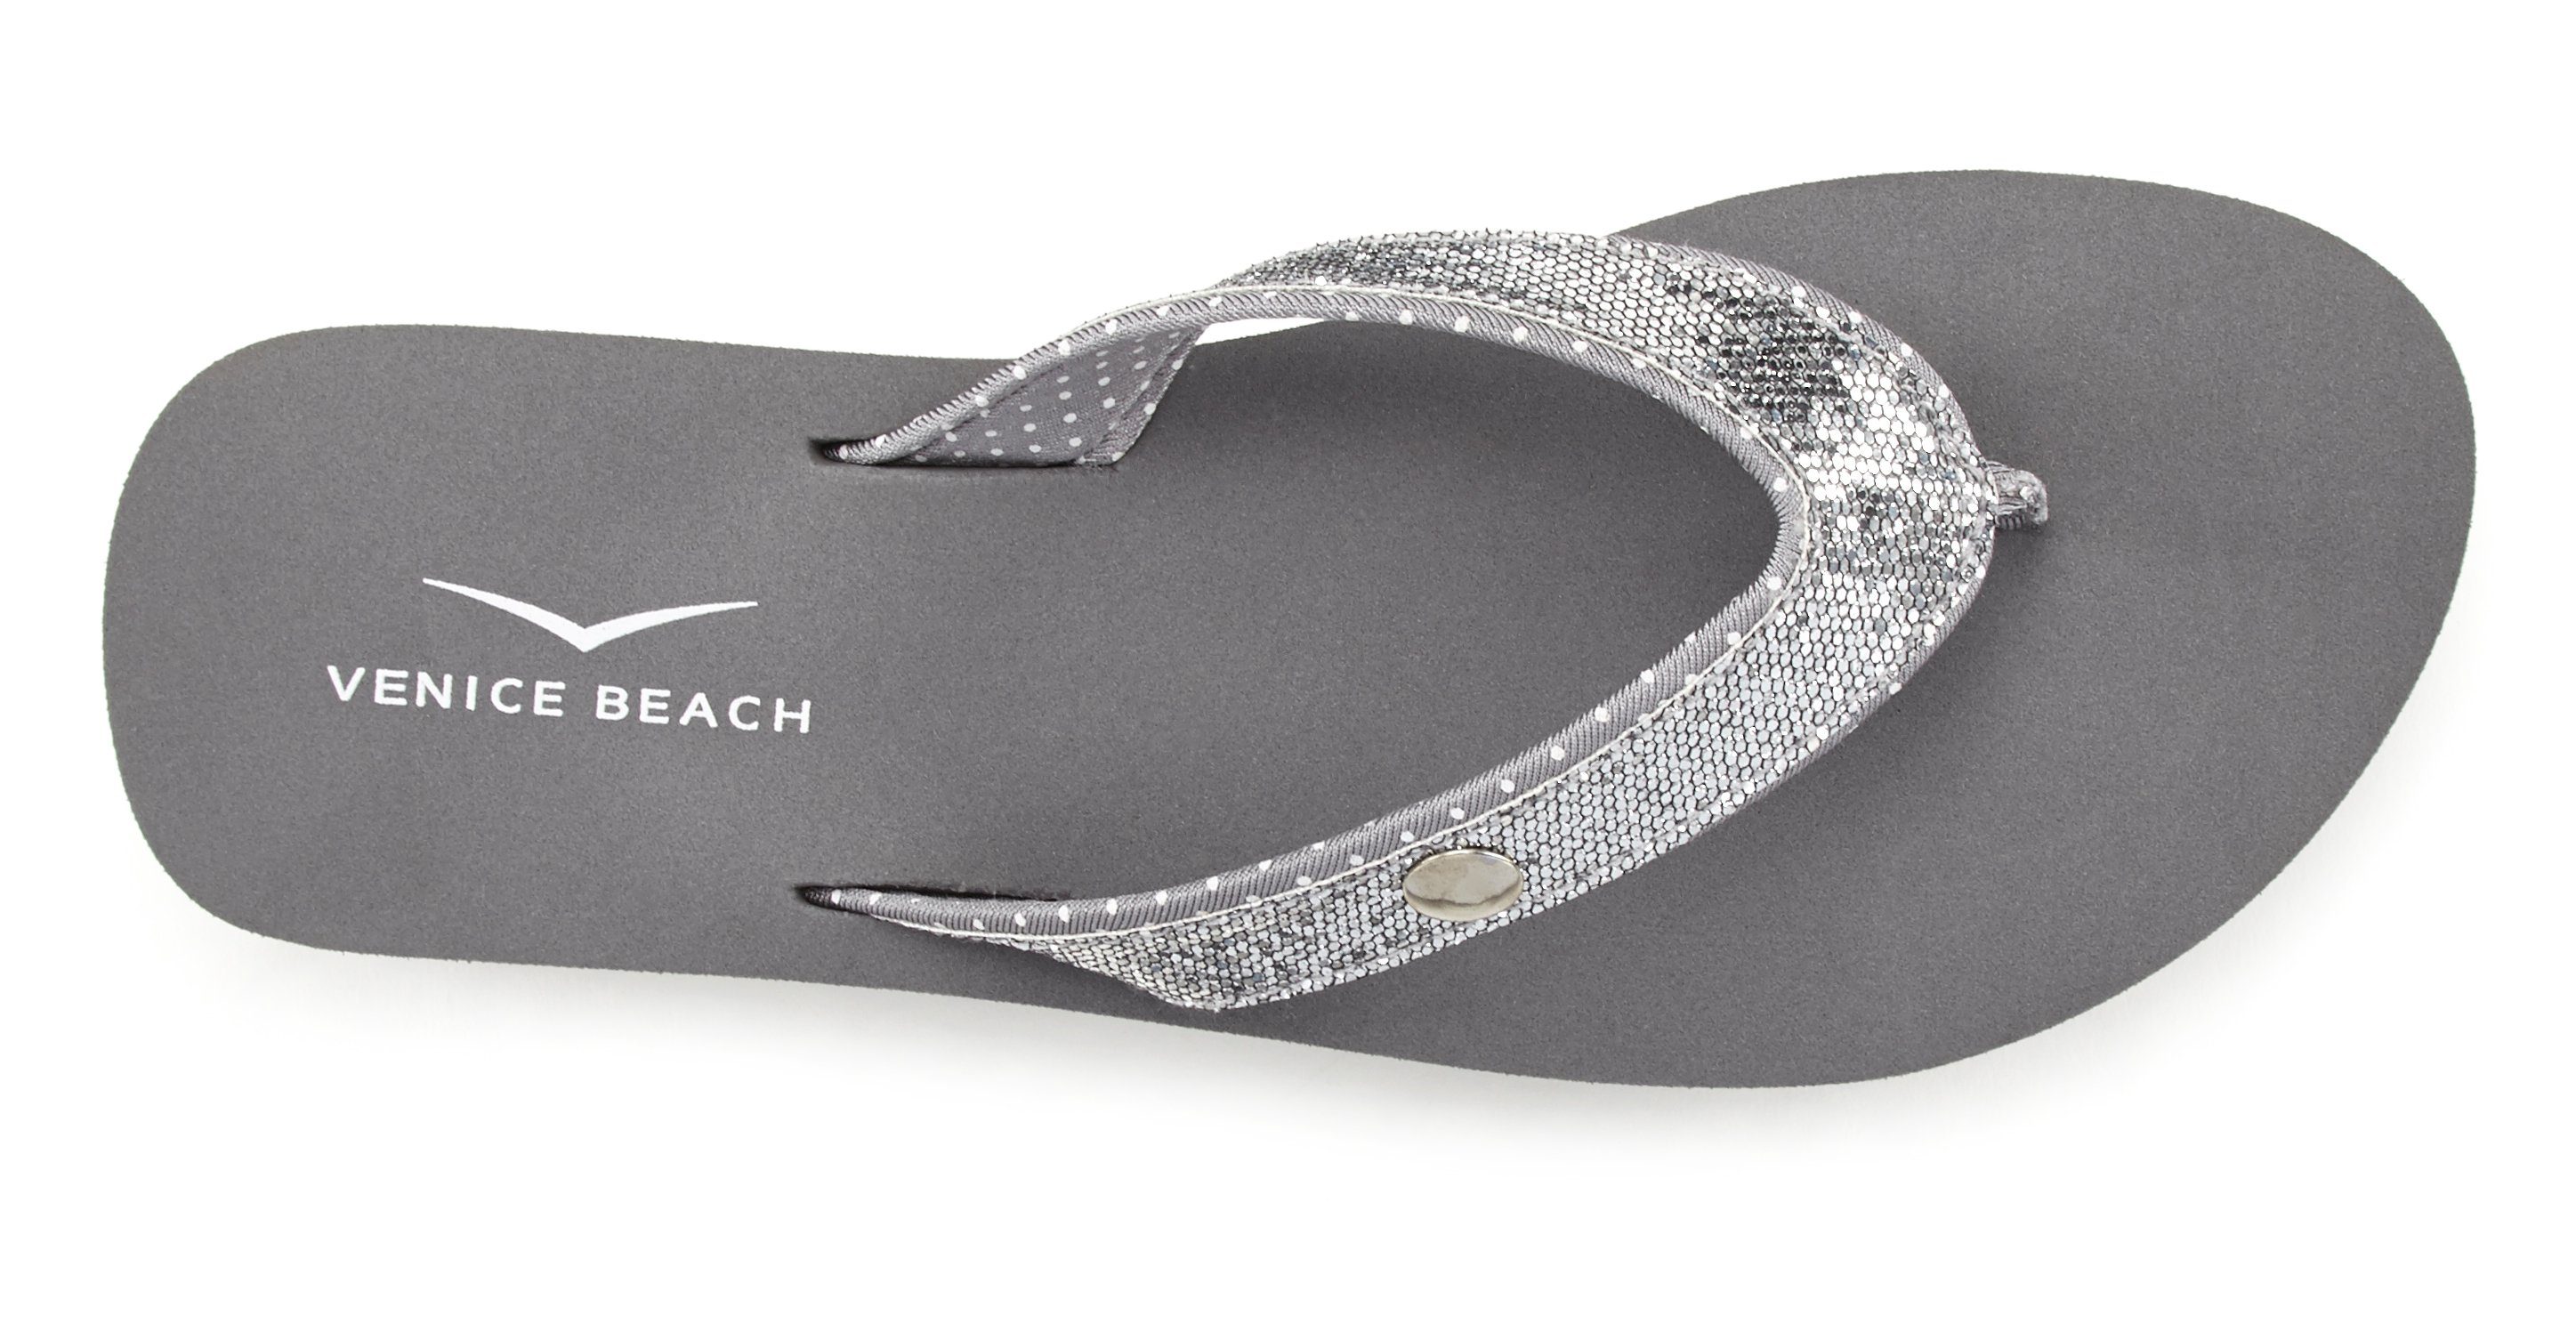 Venice Beach Badezehentrenner Sandale, Pantolette, ultraleicht VEGAN Glitzerband grau mit Badeschuh